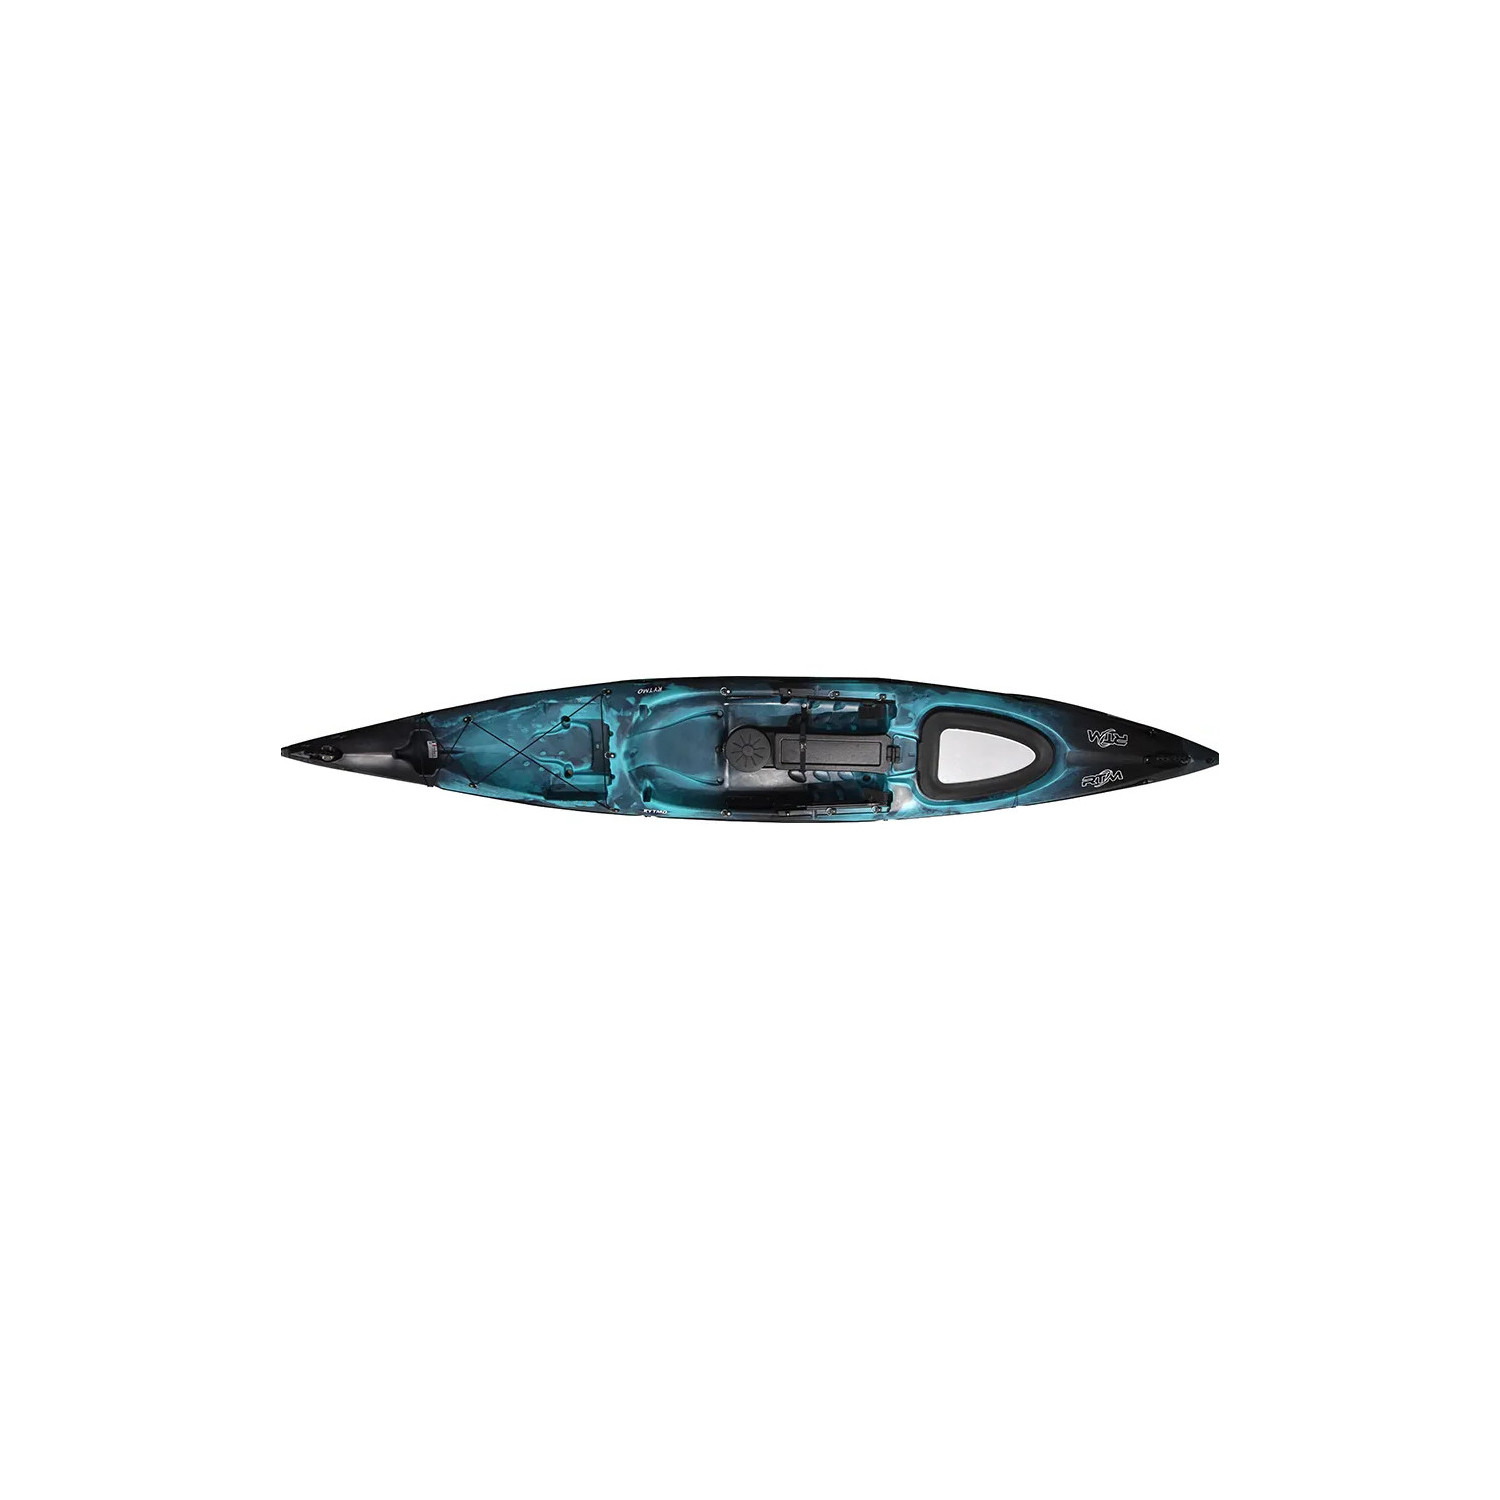 Kayak De Pesca Rtm K-largo Luxe: Diseño, Estabilidad Y Capacidad